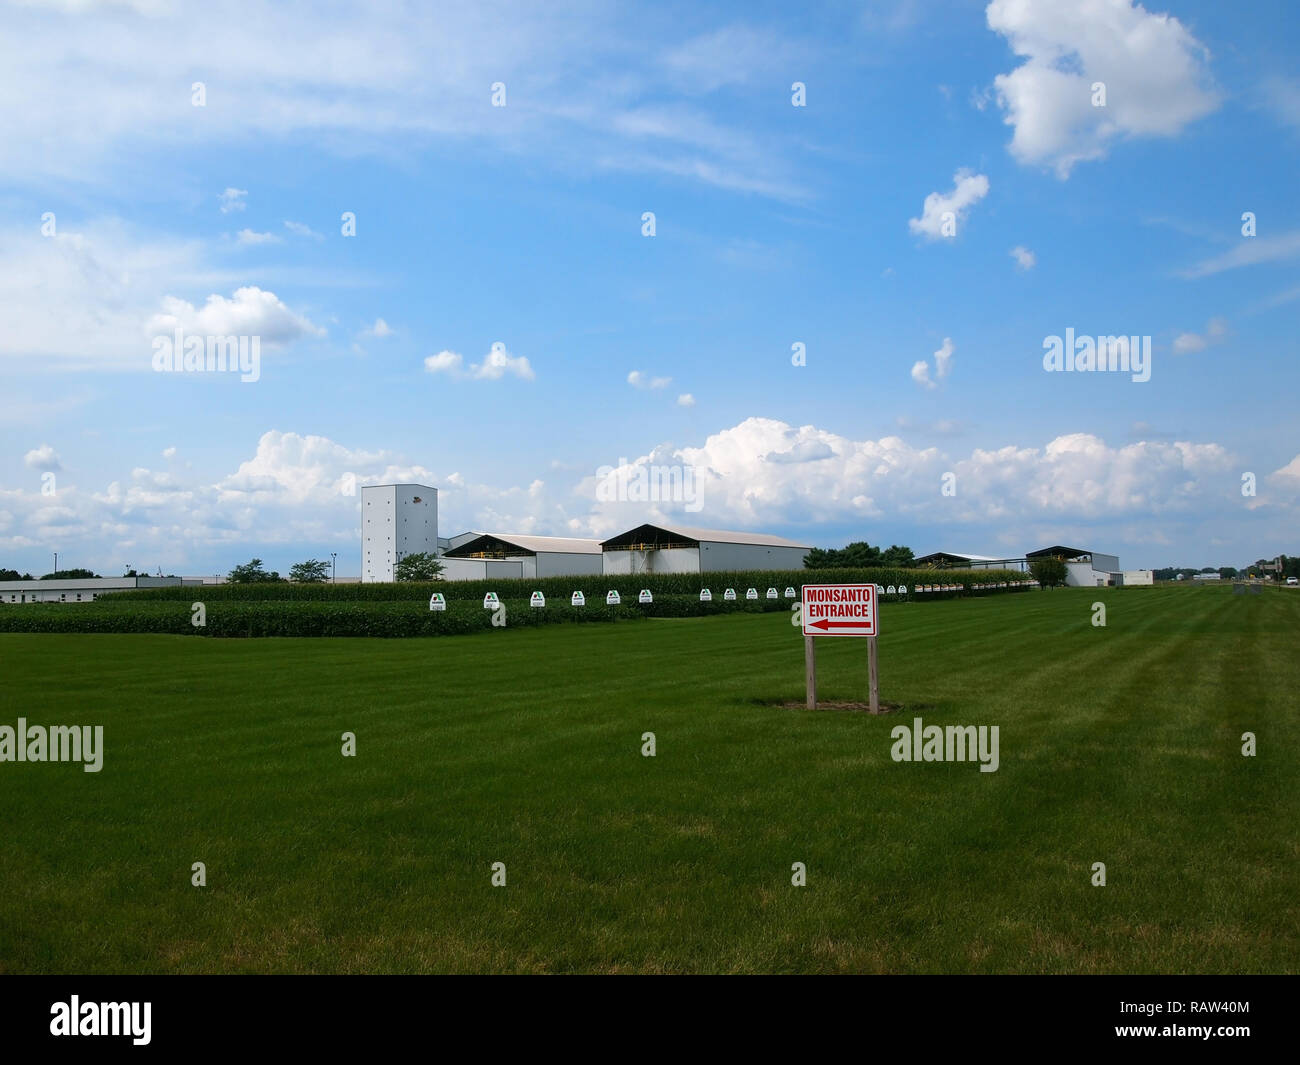 CONSTANTINE, MI - Juillet 29, 2018 : un champ de maïs et l'herbe verte sous un ciel bleu avec des nuages à un faciility Monsanto à Constantine, au Michigan Banque D'Images